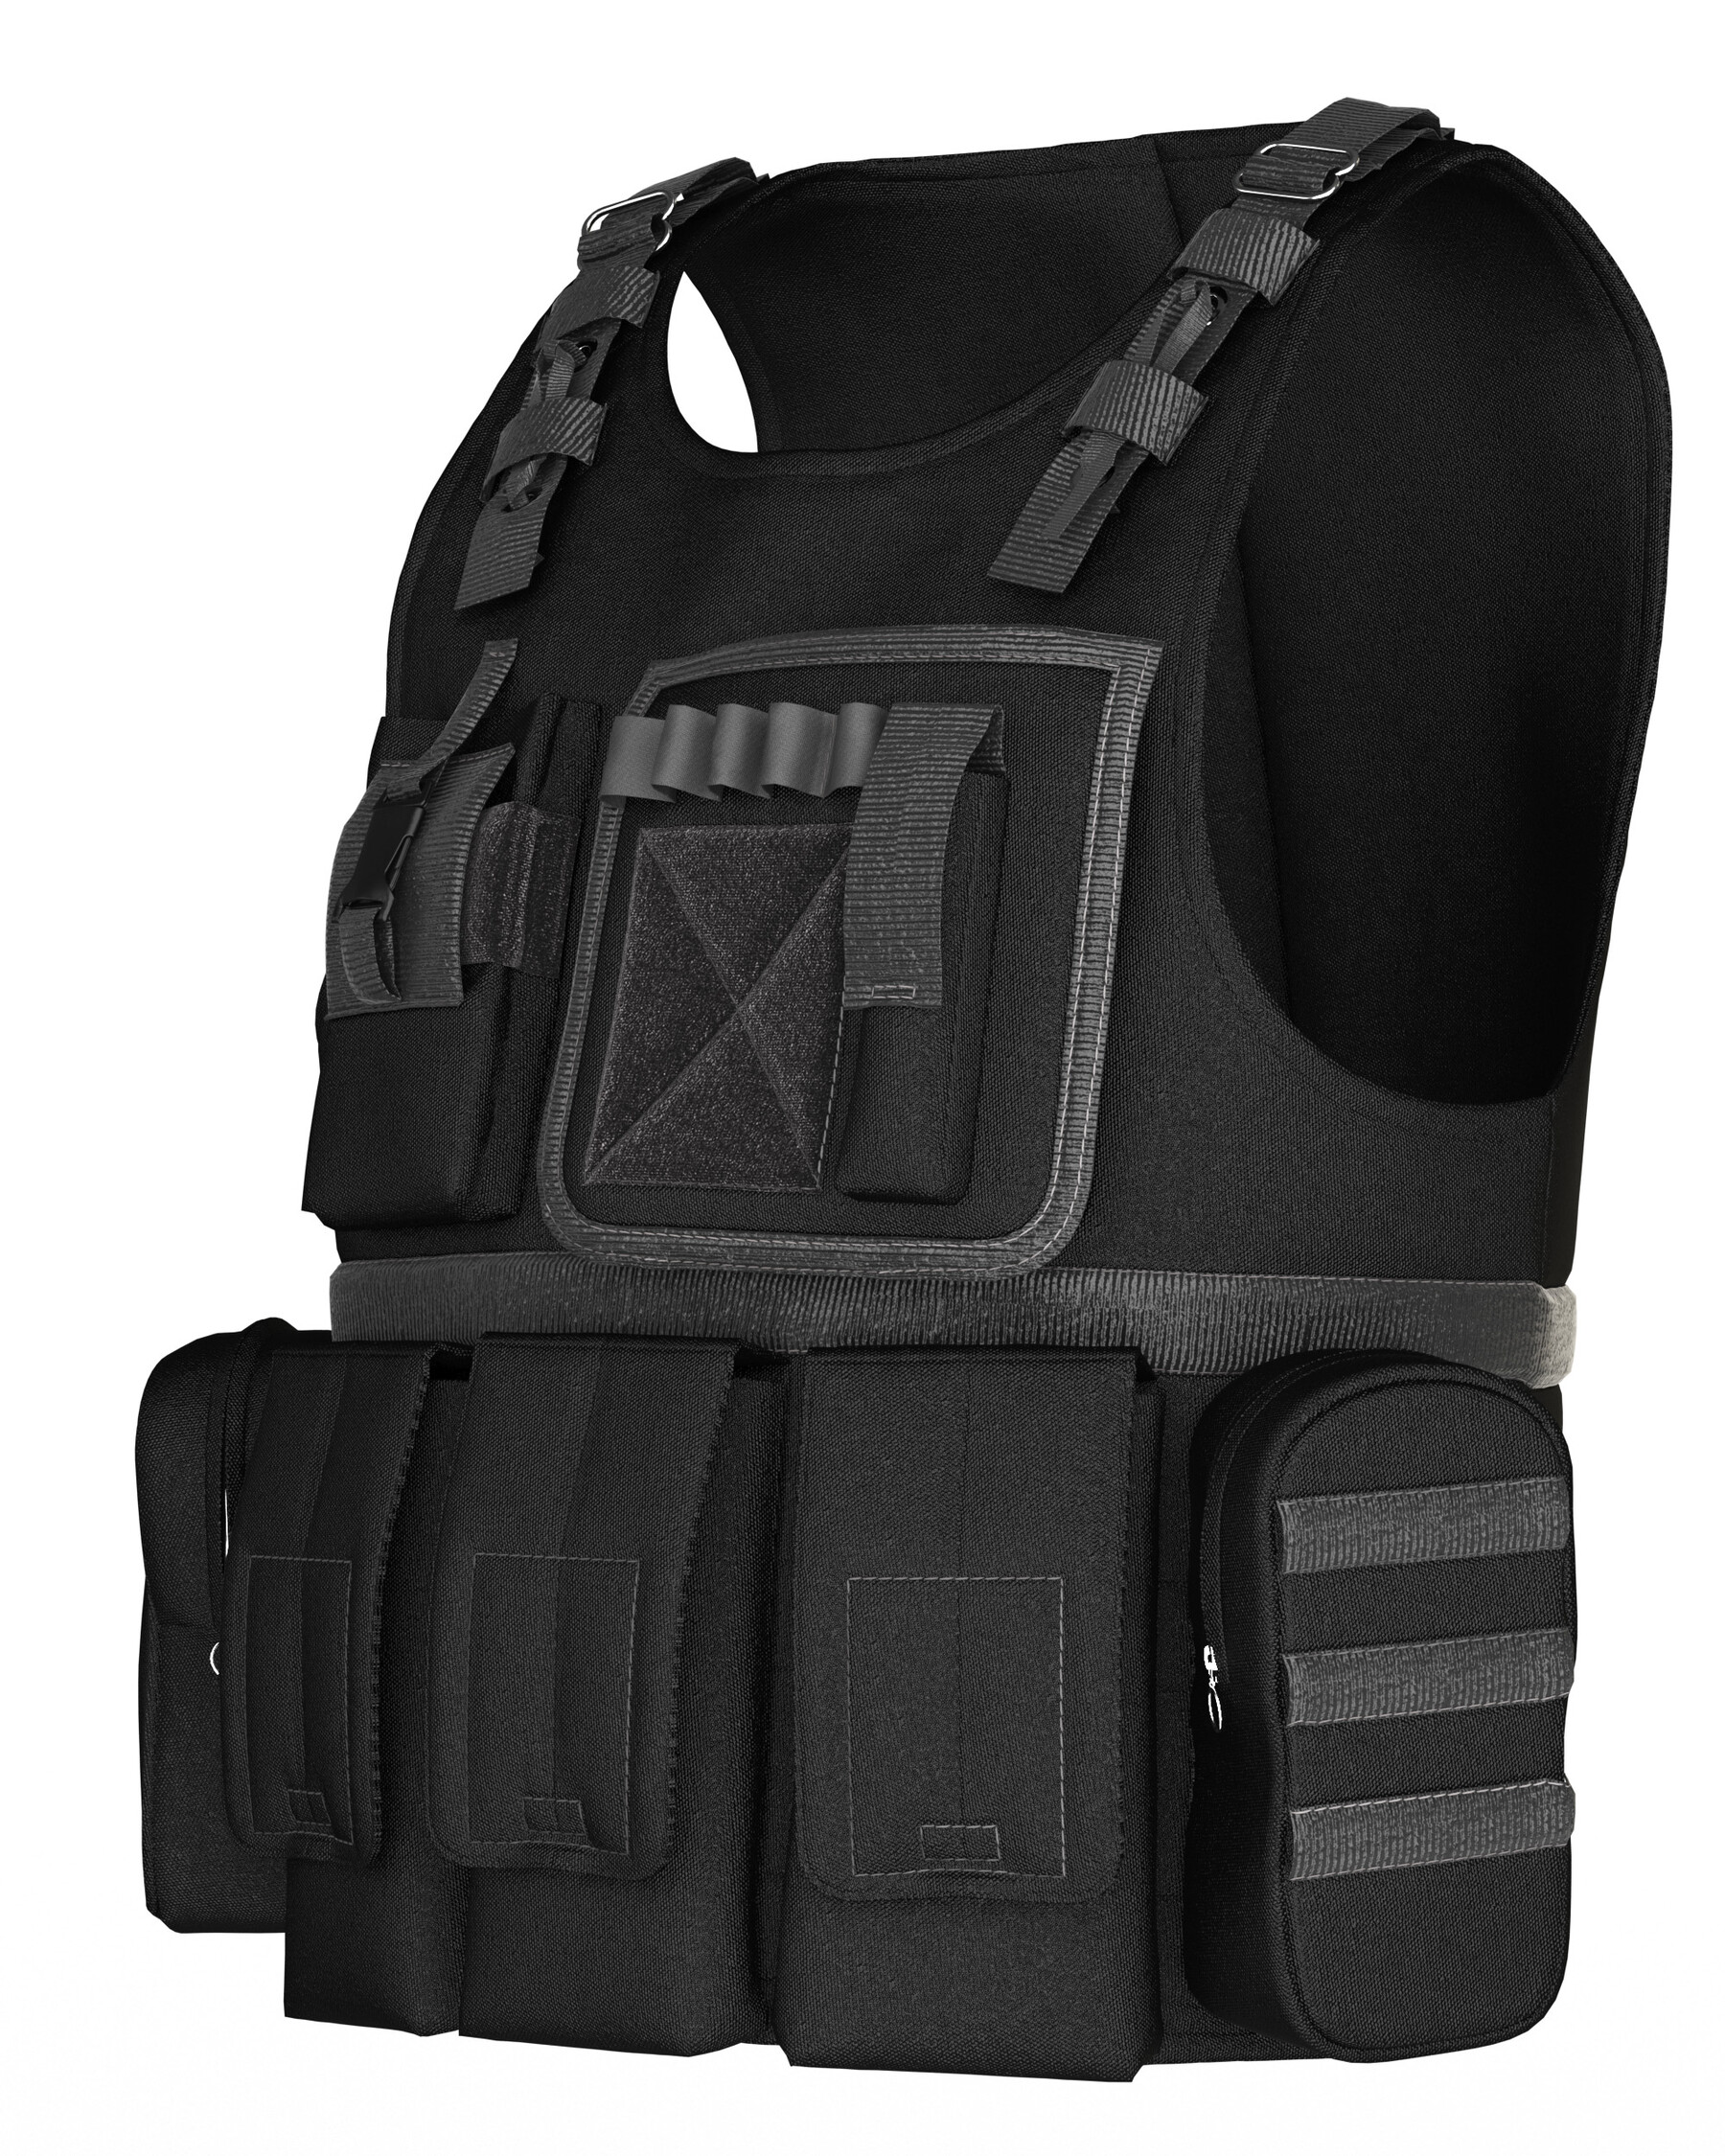 ArtStation - 3 women tactical vests / marvelous designer / clo3d / OBJ ...